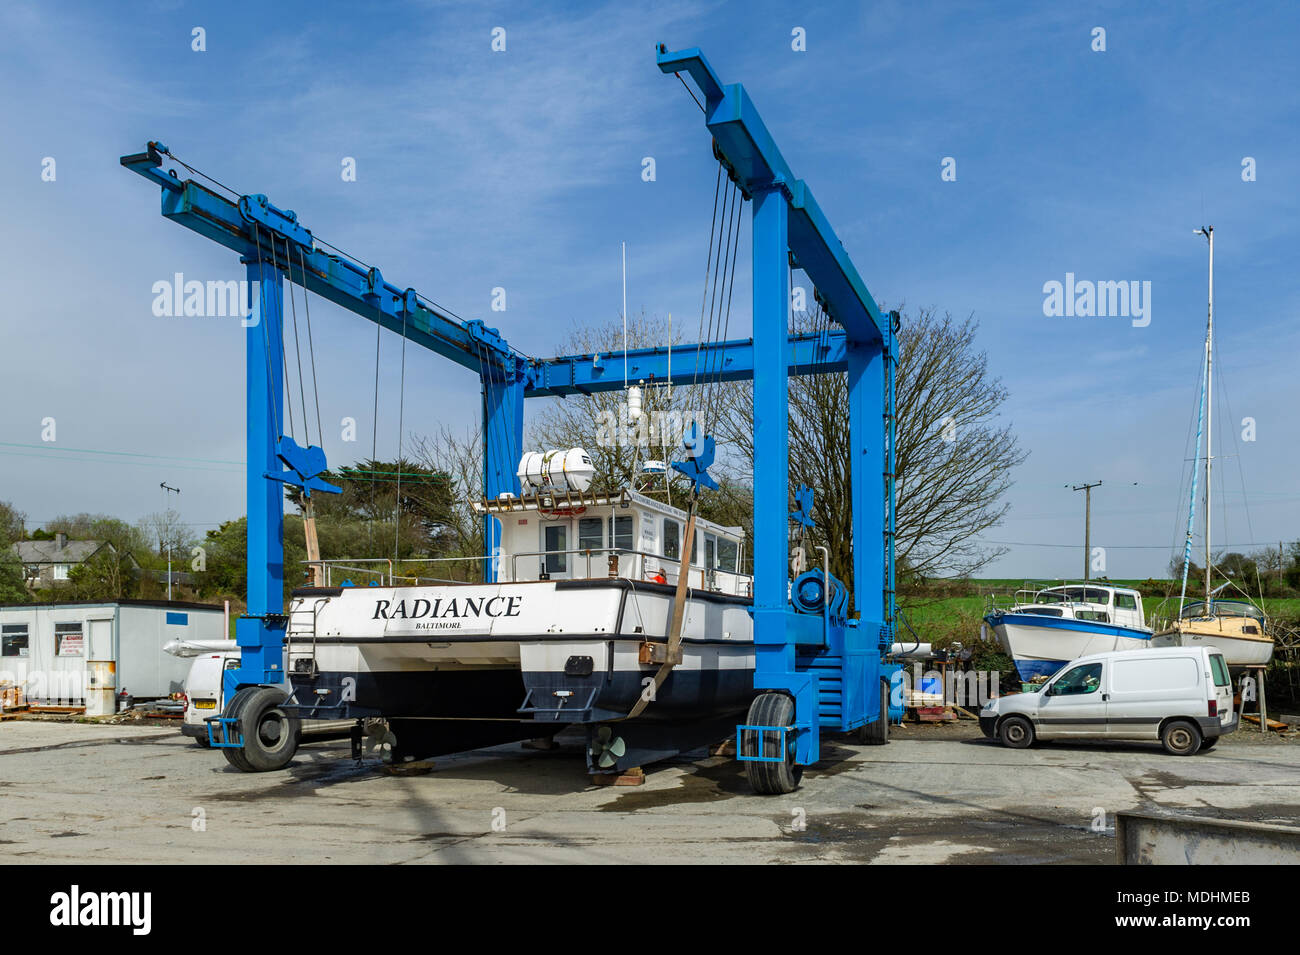 Bateau de pêche dans un bateau berceau dans un chantier naval près de Skibbereen, comté de Cork, Irlande avec copie espace. Banque D'Images